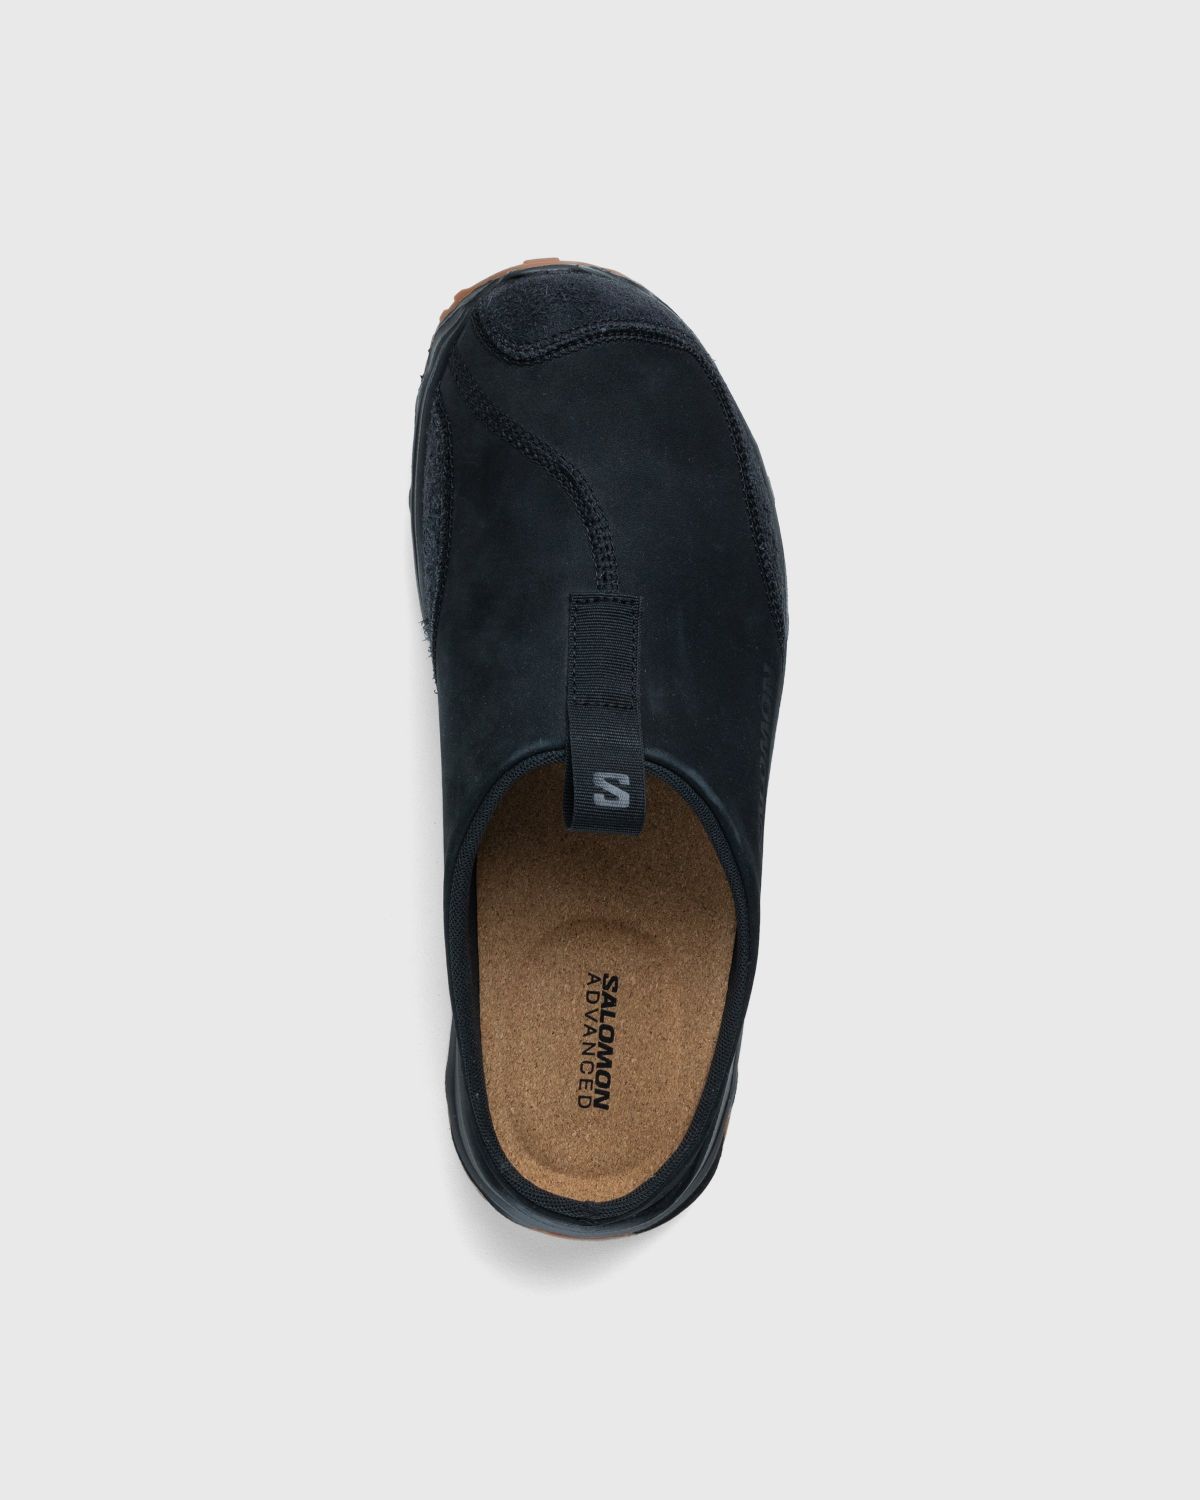 Mispend forstørrelse mønt Salomon – RX Slide Leather Advanced Black | Highsnobiety Shop